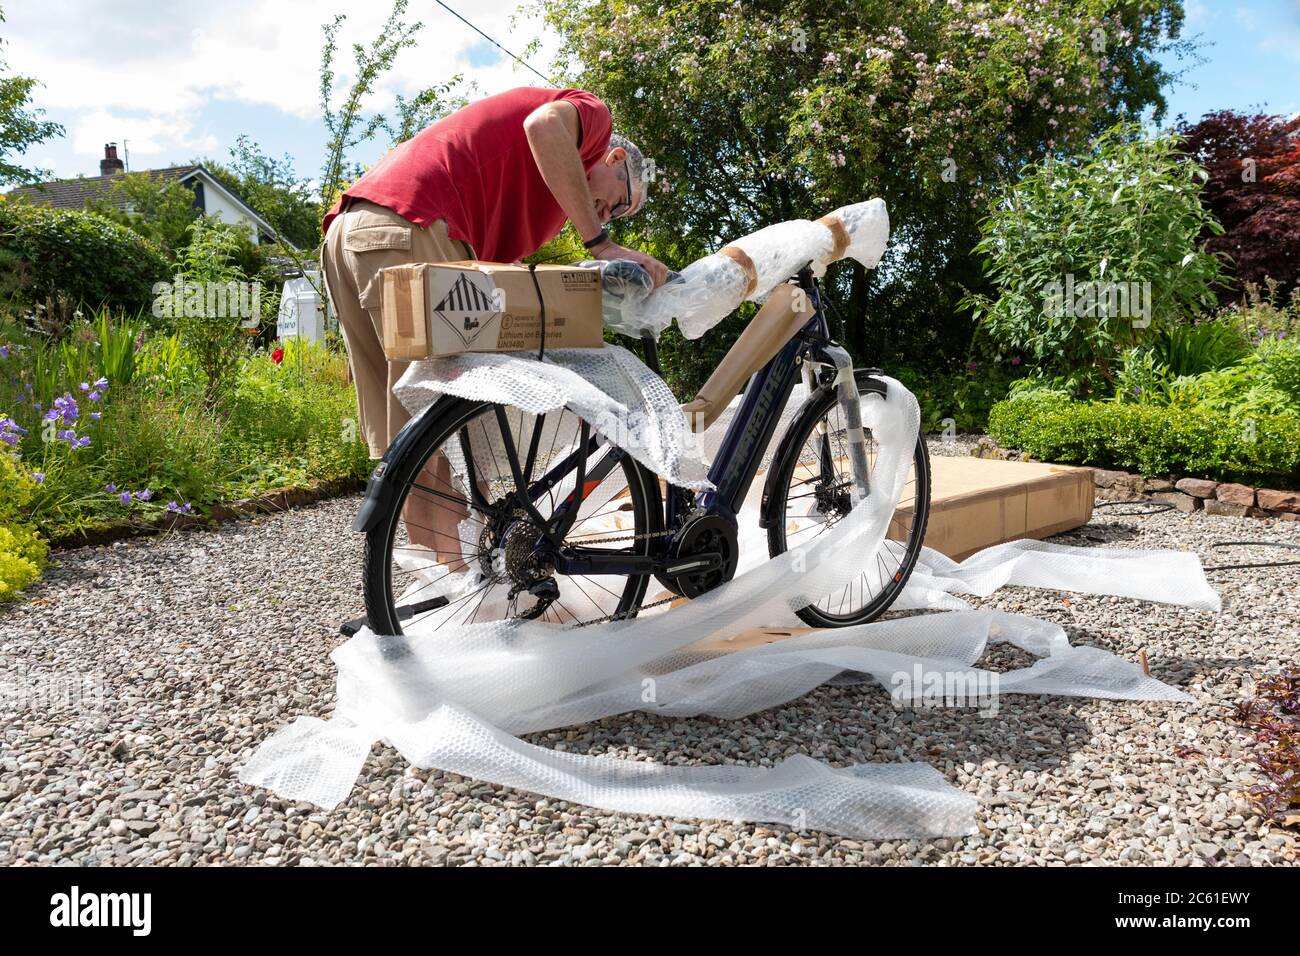 Home Lieferung von Elektro-Fahrrad eBike online bestellt während der Coronavirus Lockdown - Fahrrad aus Fahrradbox und Auspacken Luftpolsterfolie genommen - UK Stockfoto